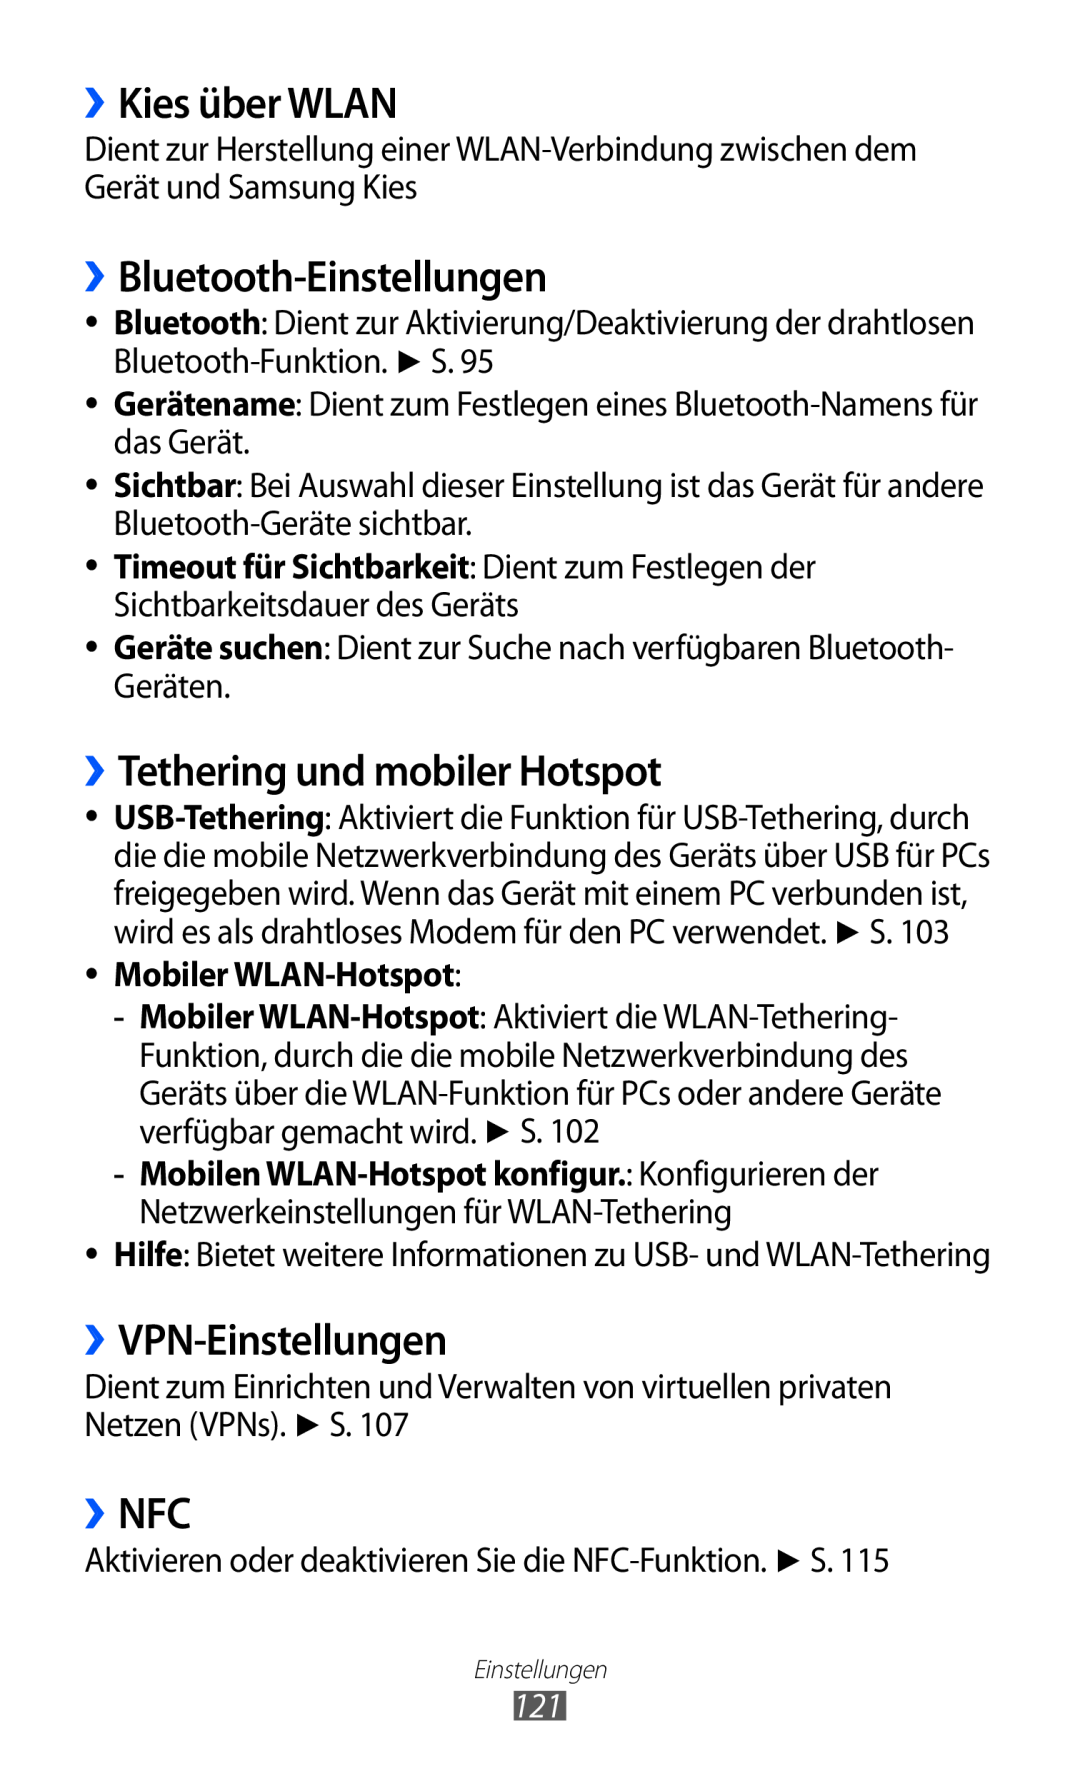 Samsung GT-S6500XKAVD2 ››Kies über WLAN, ››Bluetooth-Einstellungen, ››Tethering und mobiler Hotspot, ››VPN-Einstellungen 